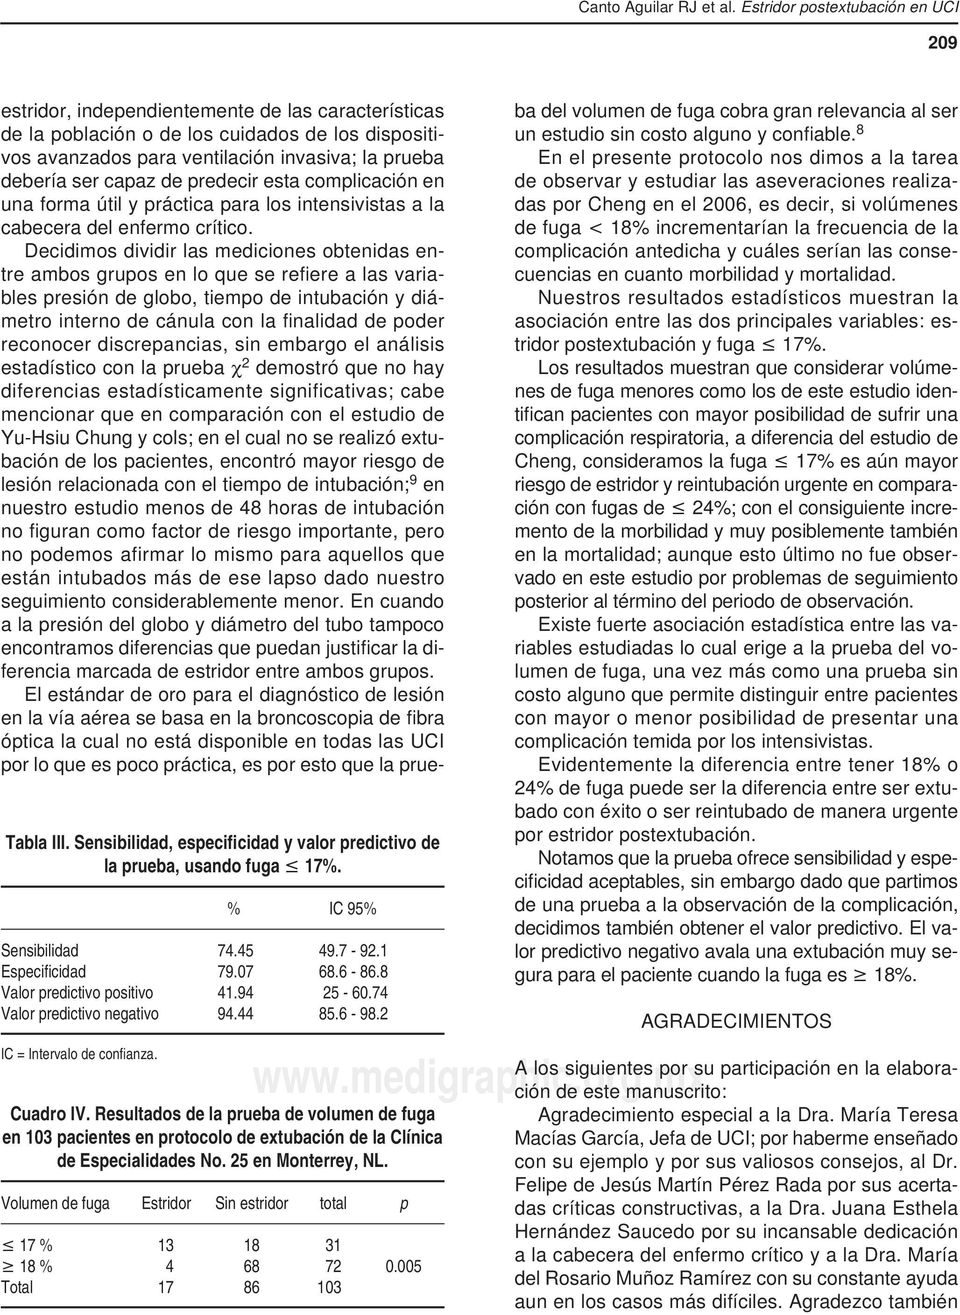 Resultados de la prueba de volumen de fuga en 103 pacientes en protocolo de extubación de la Clínica de Especialidades No. 25 en Monterrey, NL.